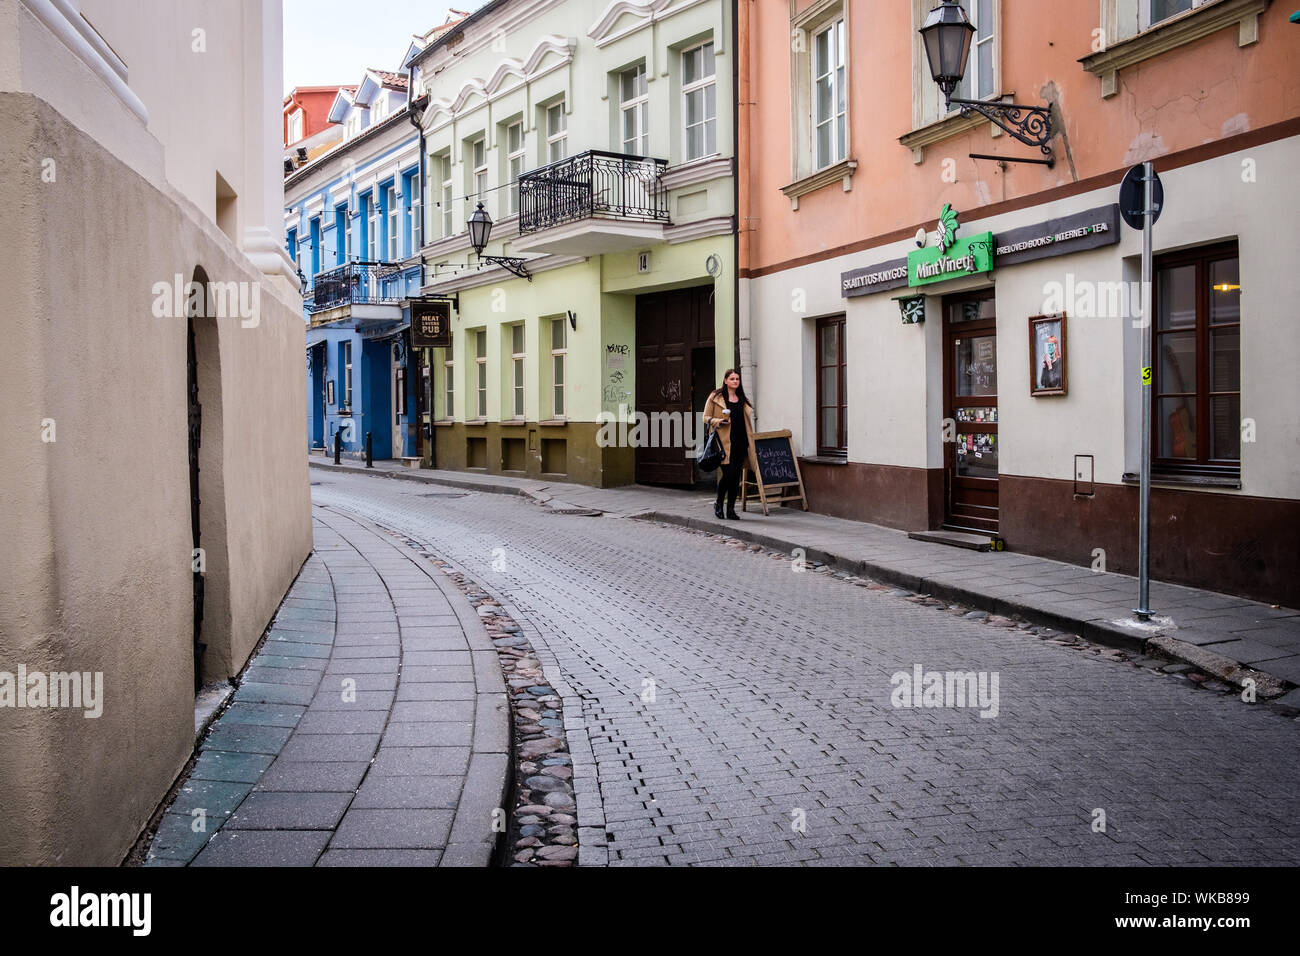 Lituania, Vilna. San Ignacio Street (áv Ignoto g) en el centro histórico Foto de stock